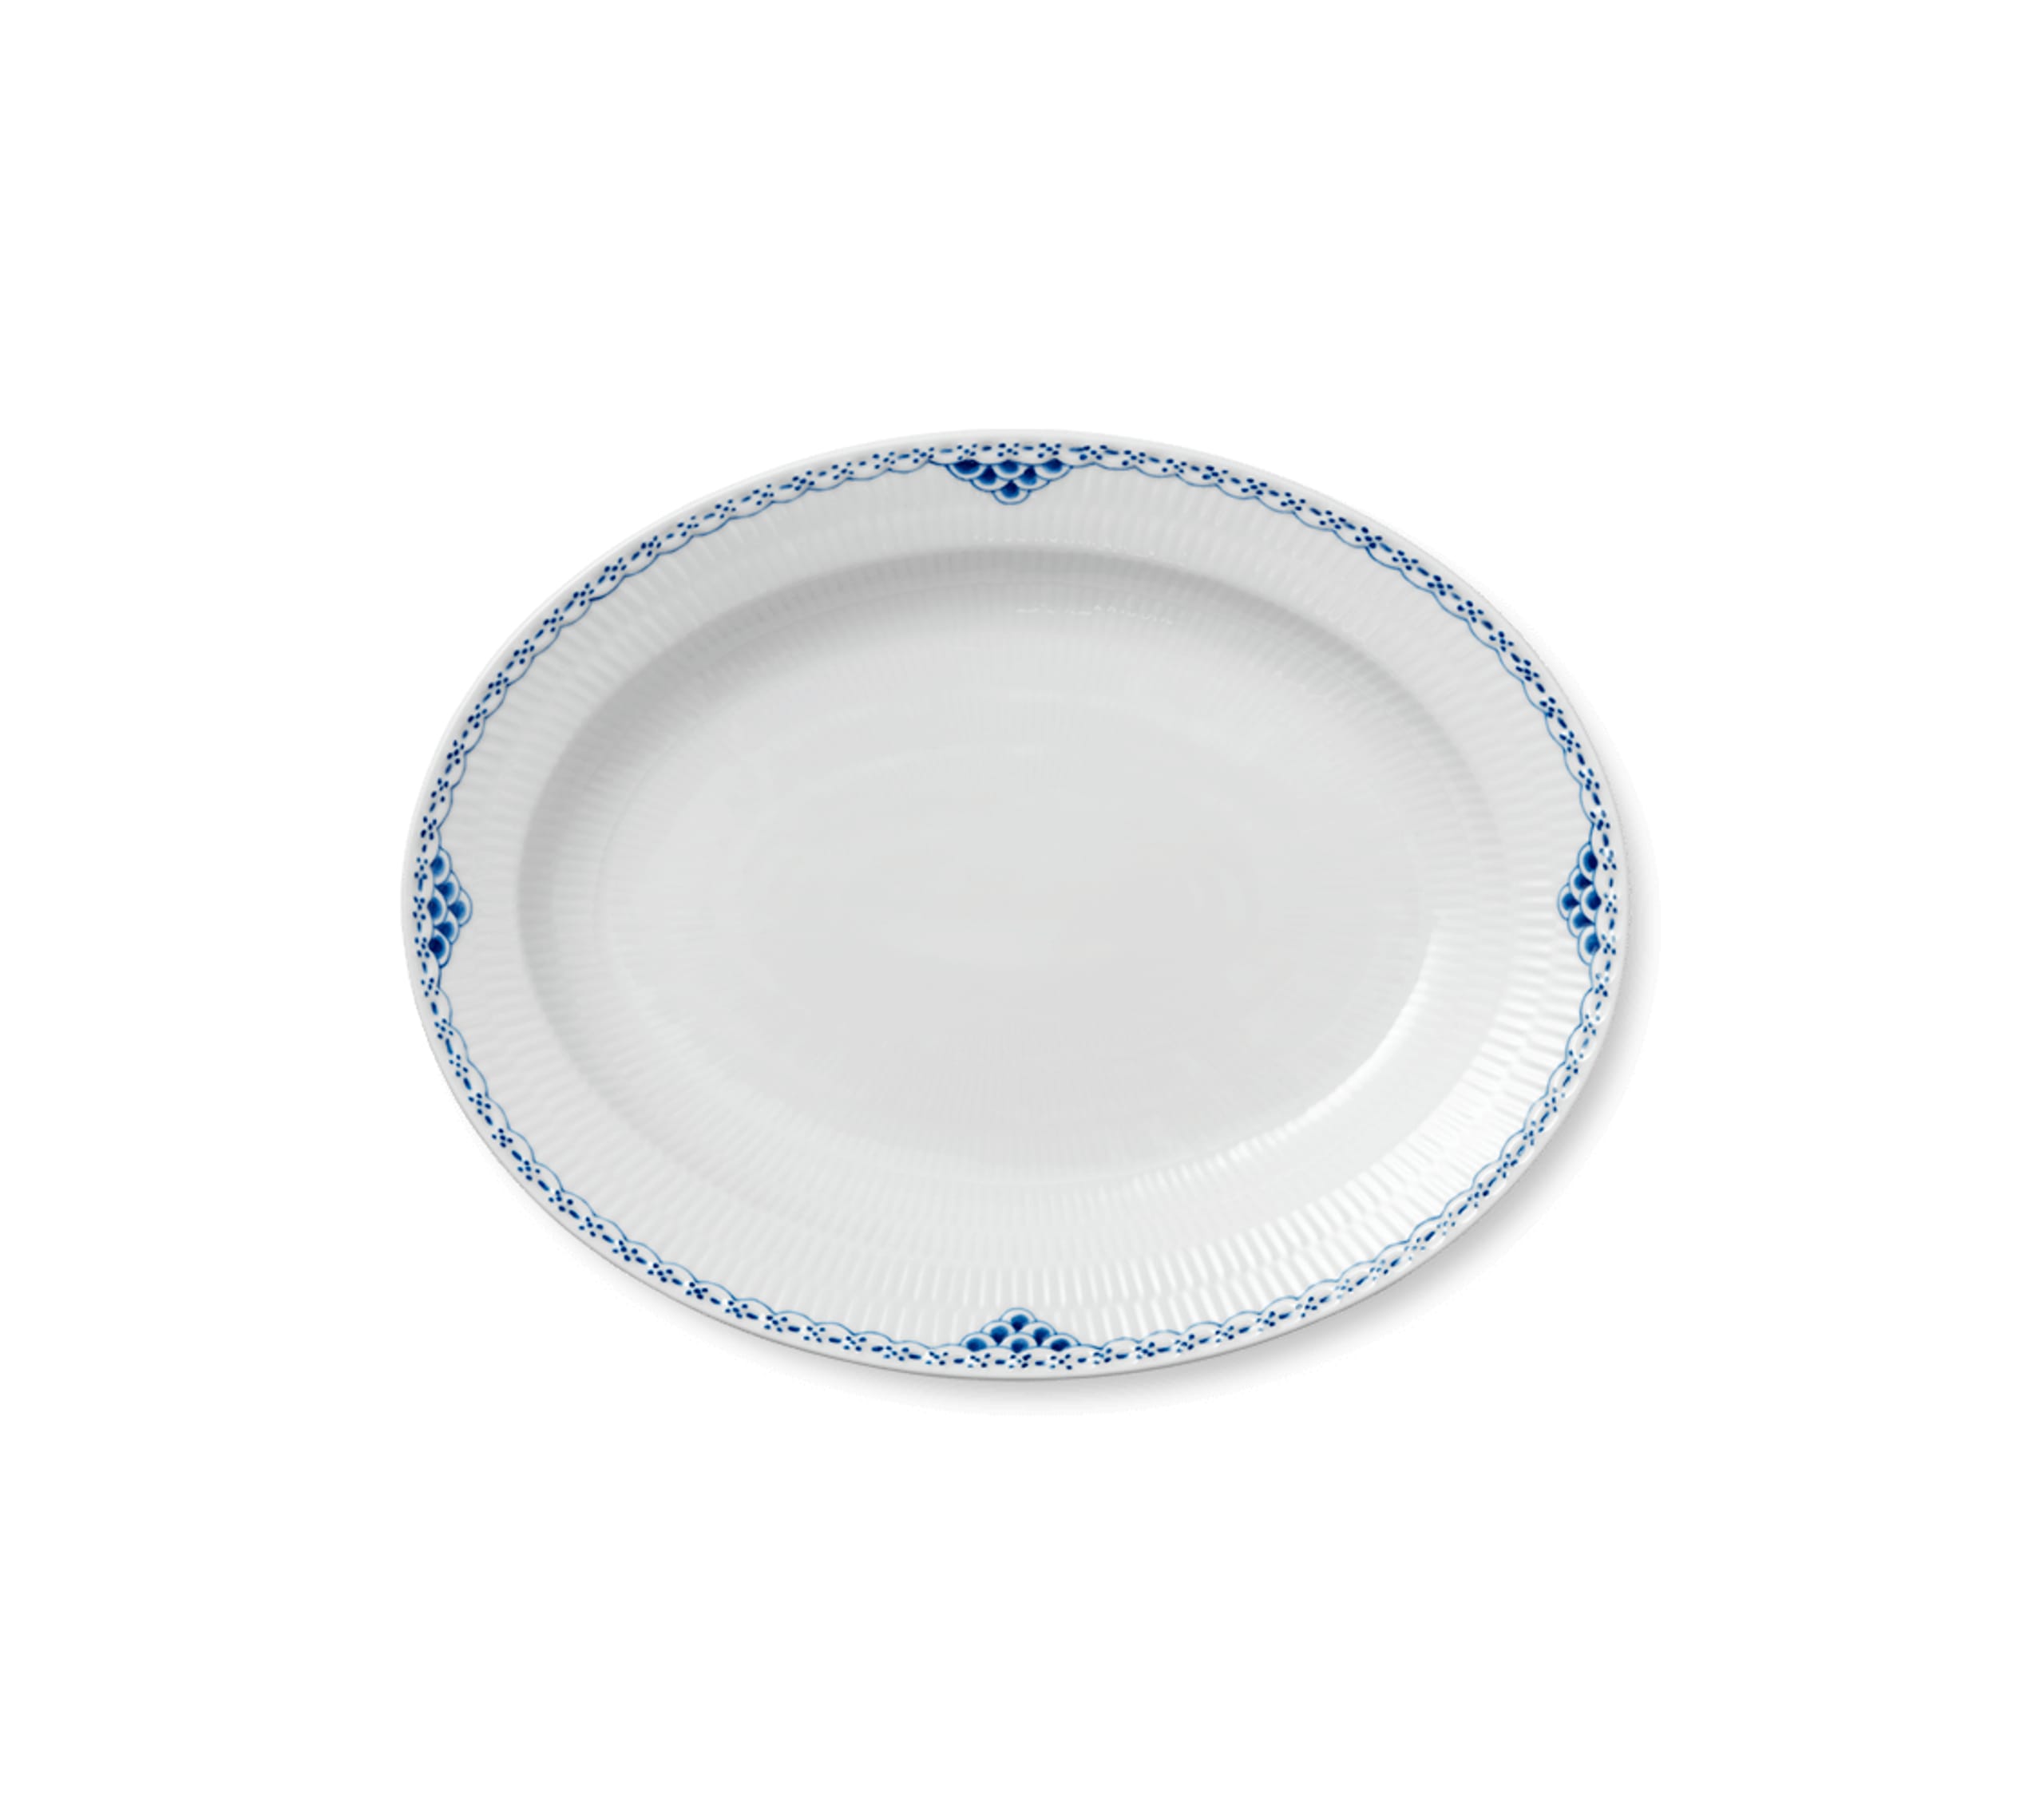 Royal Copenhagen - Disque - Princess - Serving items - Large dish